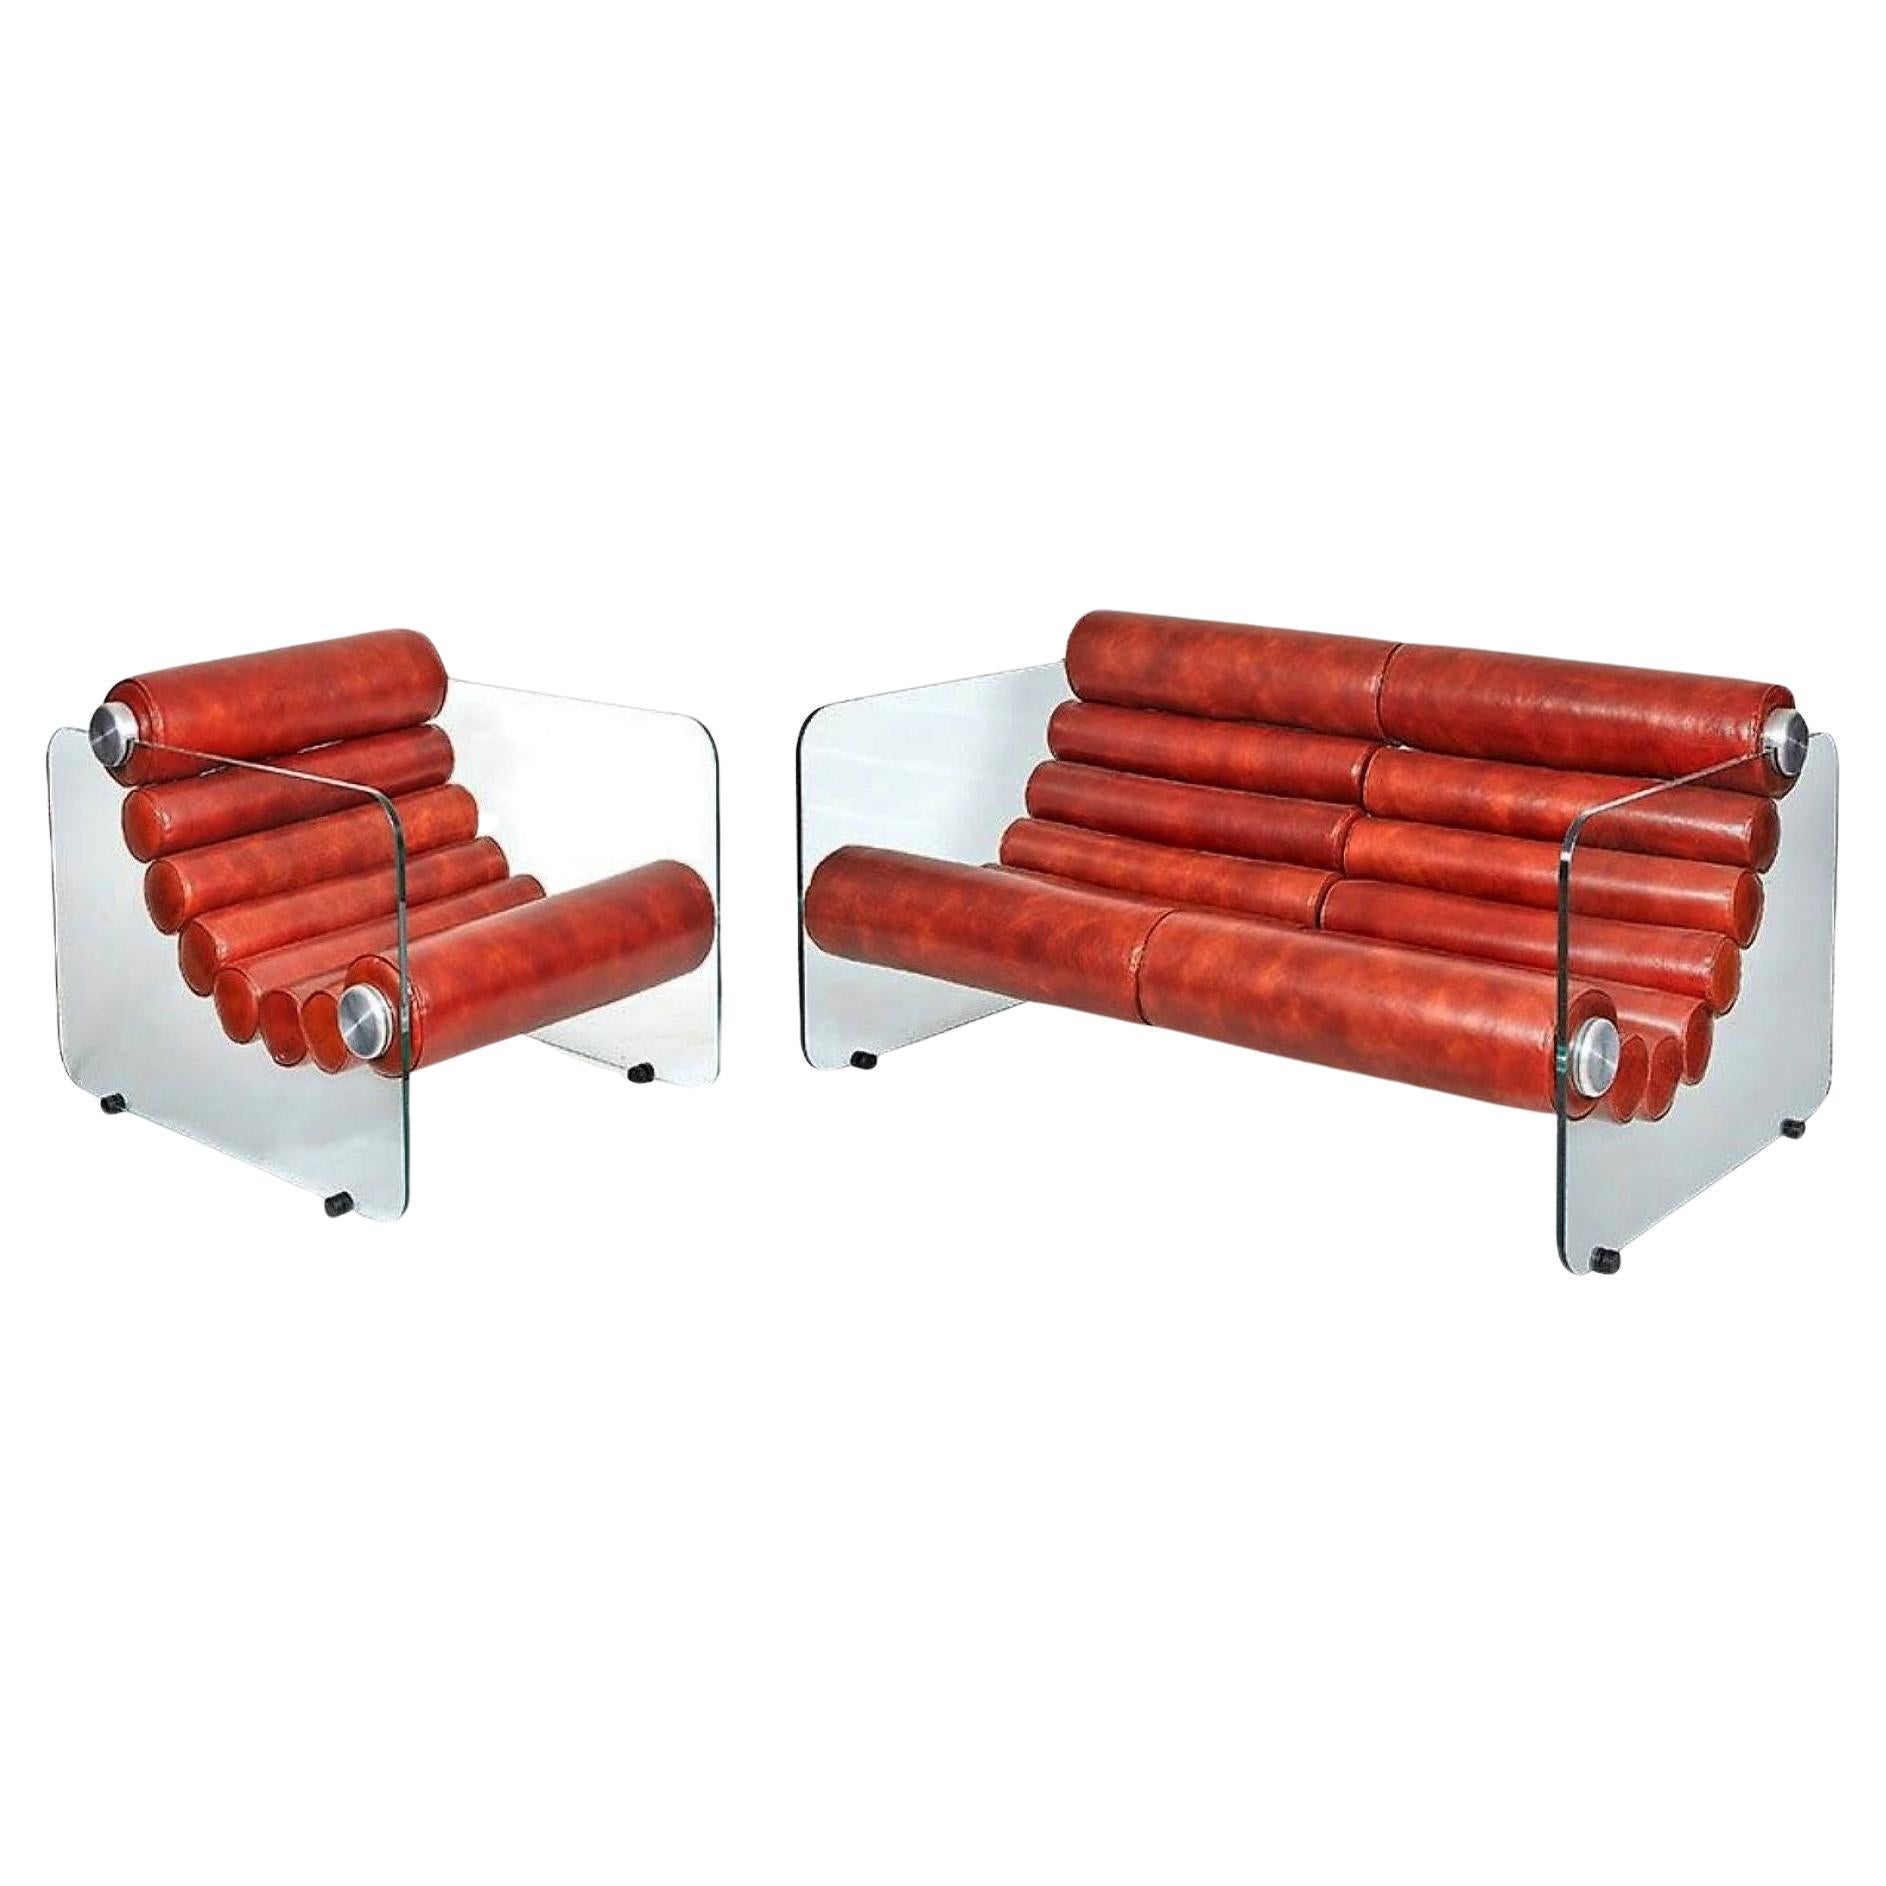 FABIO LENCI - sofá y sillón modulables en cuero y cristal.